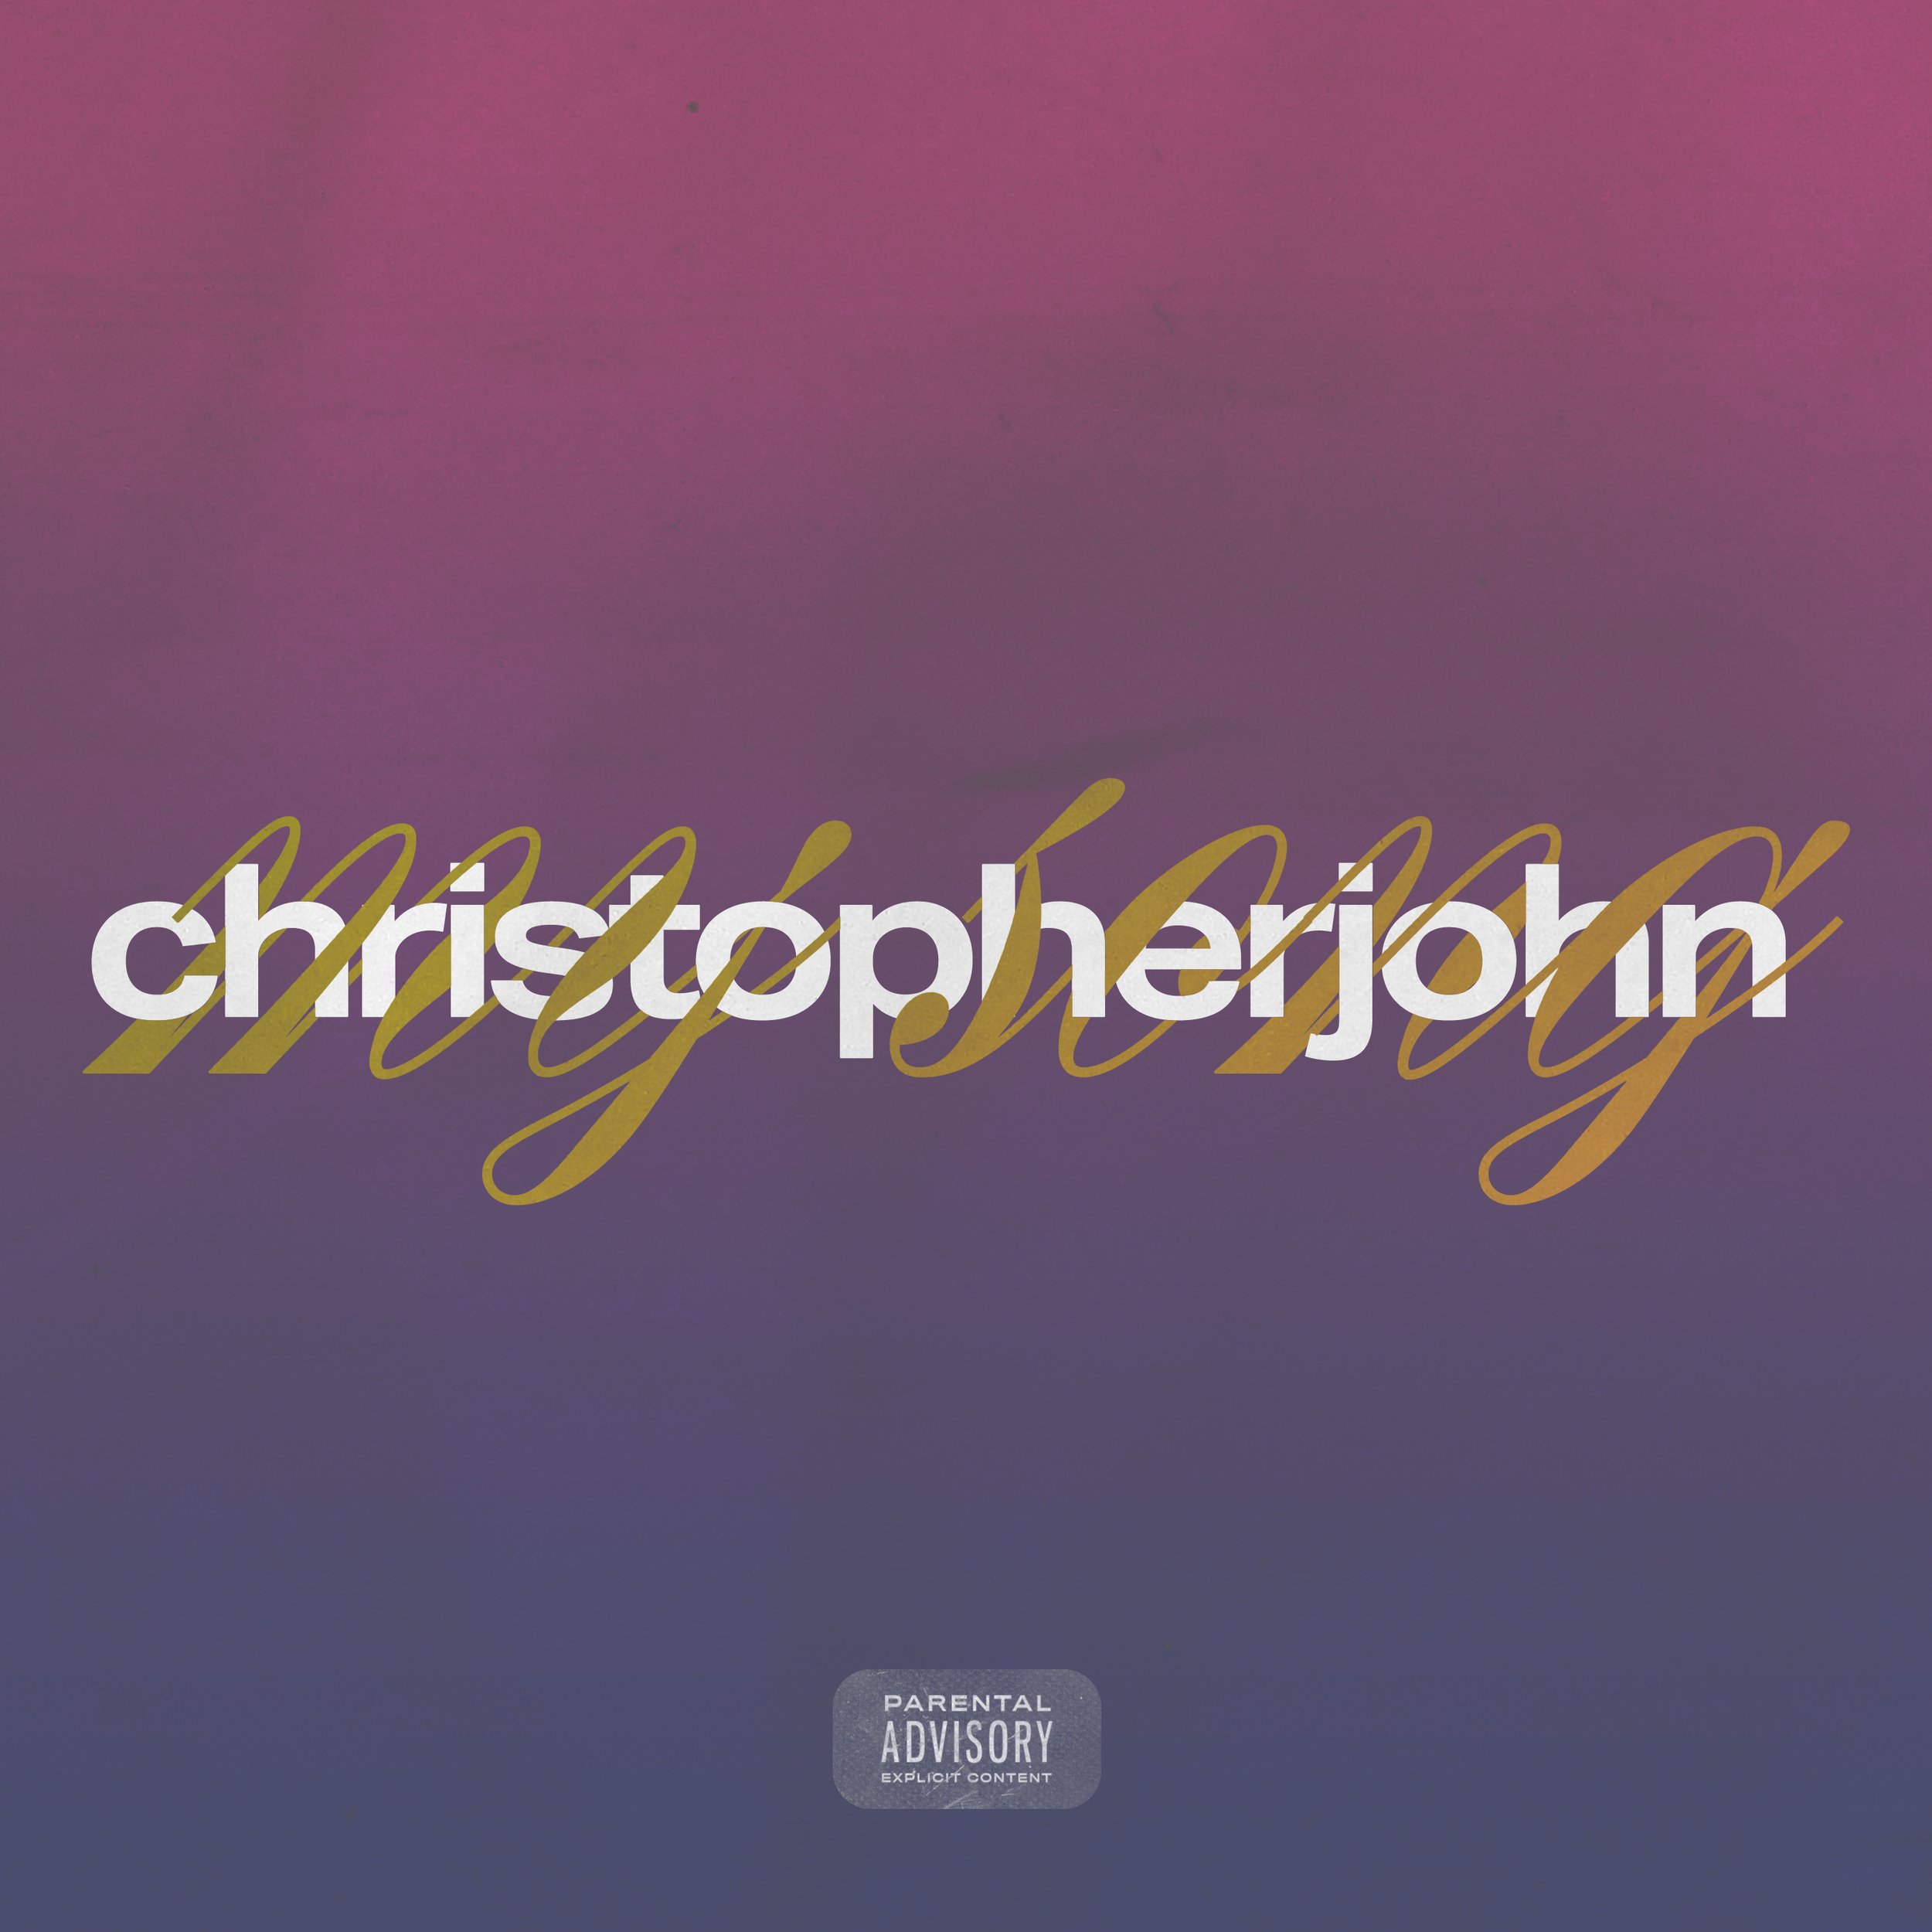 CHRISTOPHER J MUSIC - SINGLE COVER 1 [f] 10-23-19-5.jpg